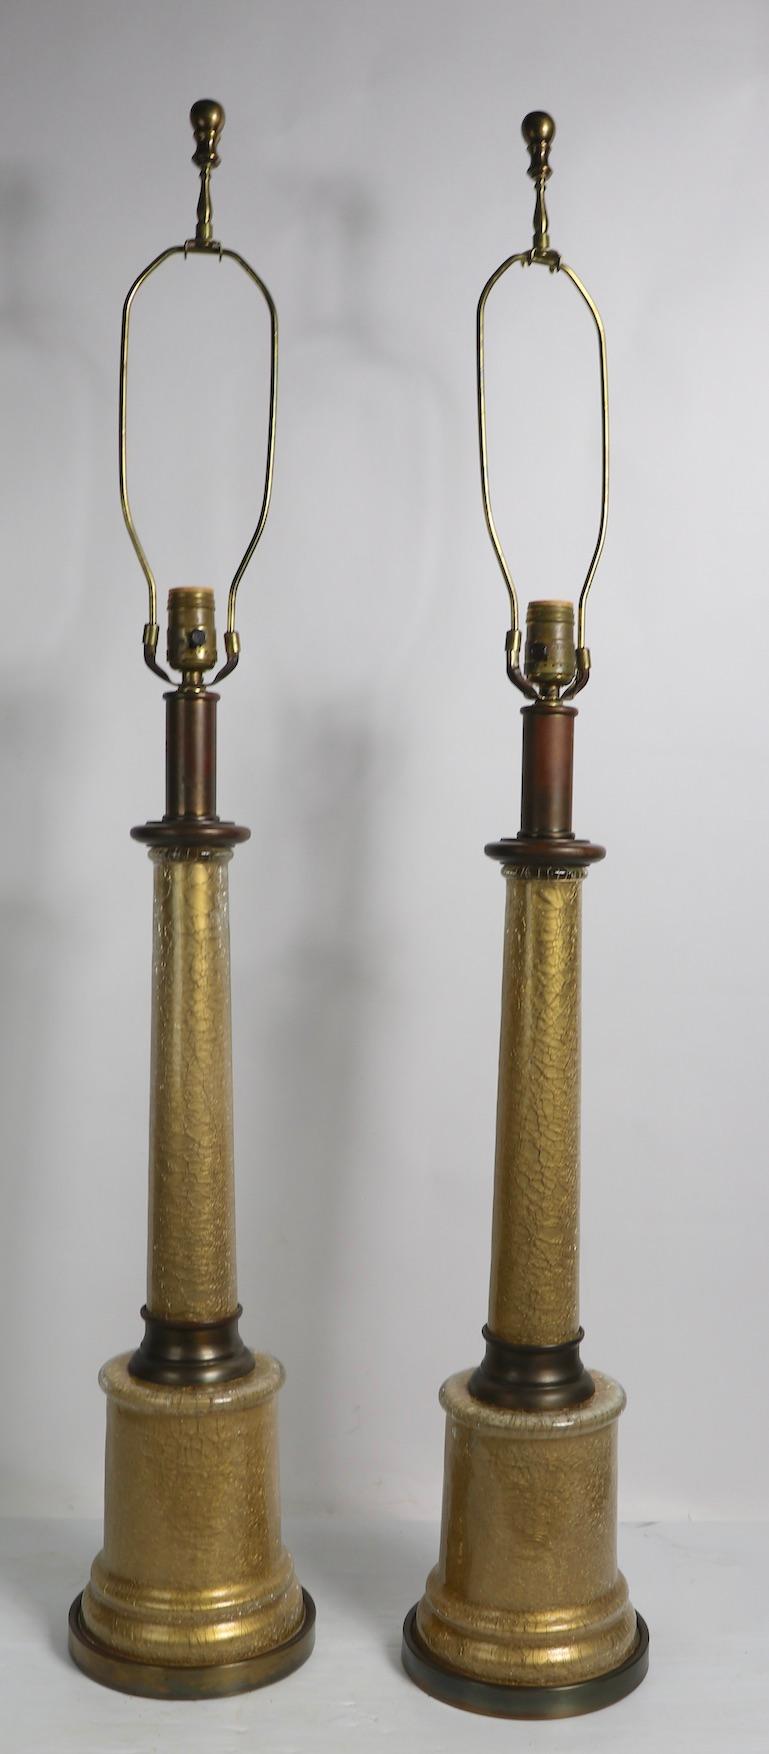 Schickes Paar Säulenlampen aus Glas mit goldenem Craquelé-Finish und Messingbeschlägen, hergestellt von Paul Hanson. Beide Geräte sind in einwandfreiem, funktionstüchtigem und sauberem Originalzustand. Klassische Säulenform in modernem,